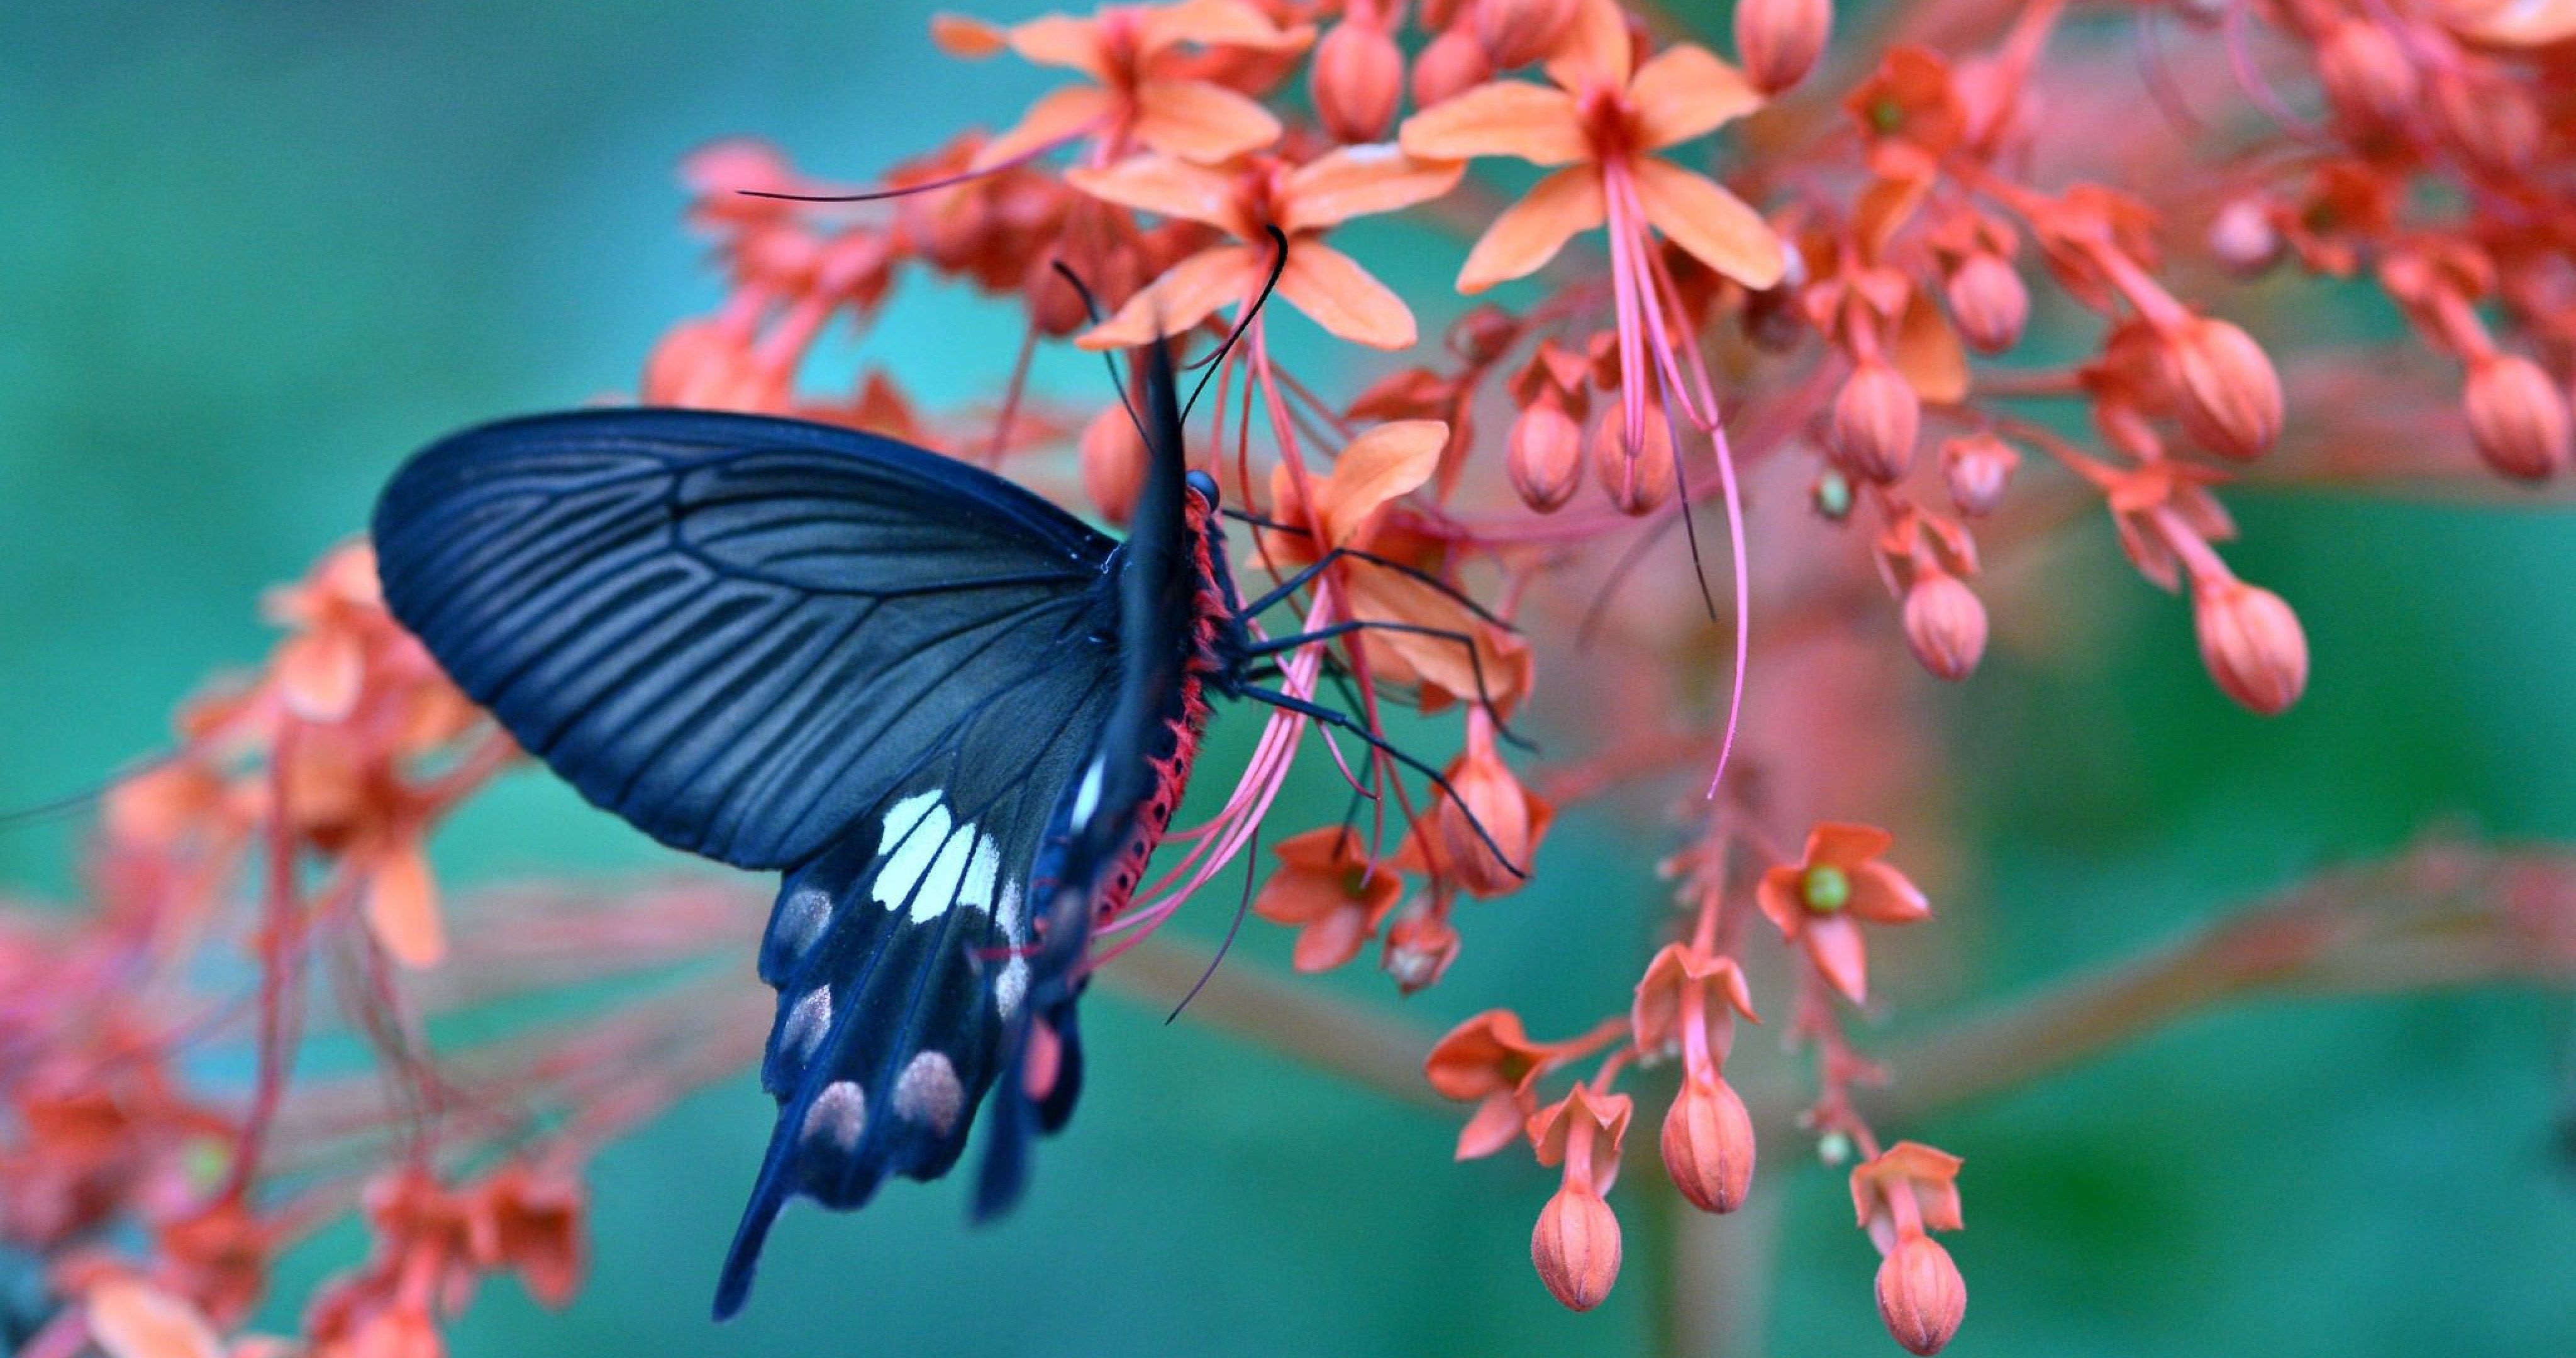 Butterfly On Flower Amazing 4k Ultra HD Wallpaper Ololoshenka